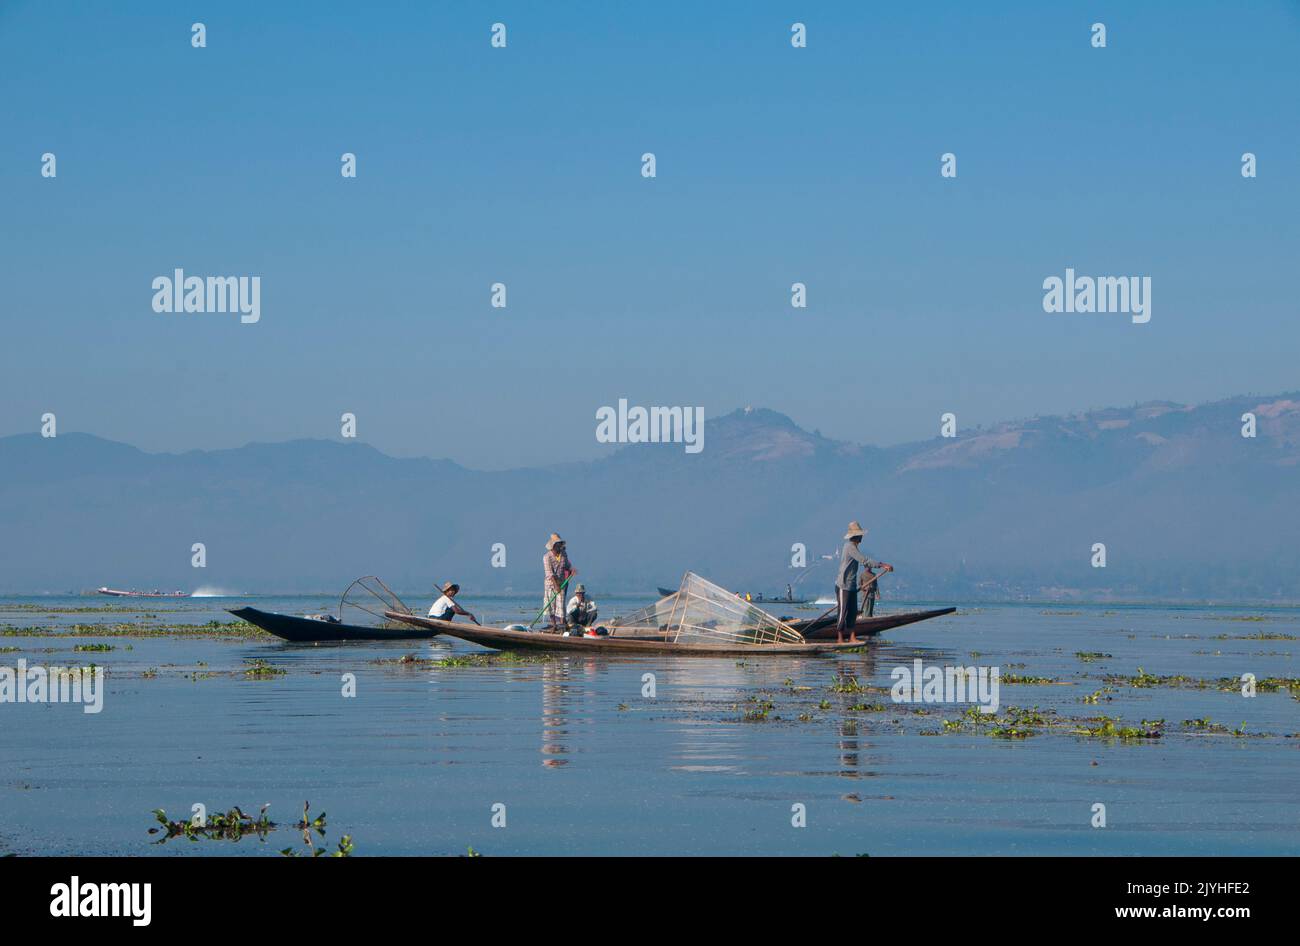 Birmanie / Myanmar: Rameur de jambes pêcheurs d'Intha sur le lac Inle, État Shan. Le lac Inle est un lac d'eau douce situé dans l'État de Shan. C'est le deuxième plus grand lac du Myanmar et l'un des plus hauts à une altitude de 2 900 pieds (880 m). Les habitants du lac Inle (appelé Intha), environ 70 000 d'entre eux, vivent dans quatre villes bordant le lac, dans de nombreux petits villages le long des rives du lac, et sur le lac lui-même. La population se compose principalement d'Intha, avec un mélange d'autres Shan, Taungyo, Pa-O (Taungthu), Danu, Kayah, Origines de Danaw et de Bamar. Banque D'Images